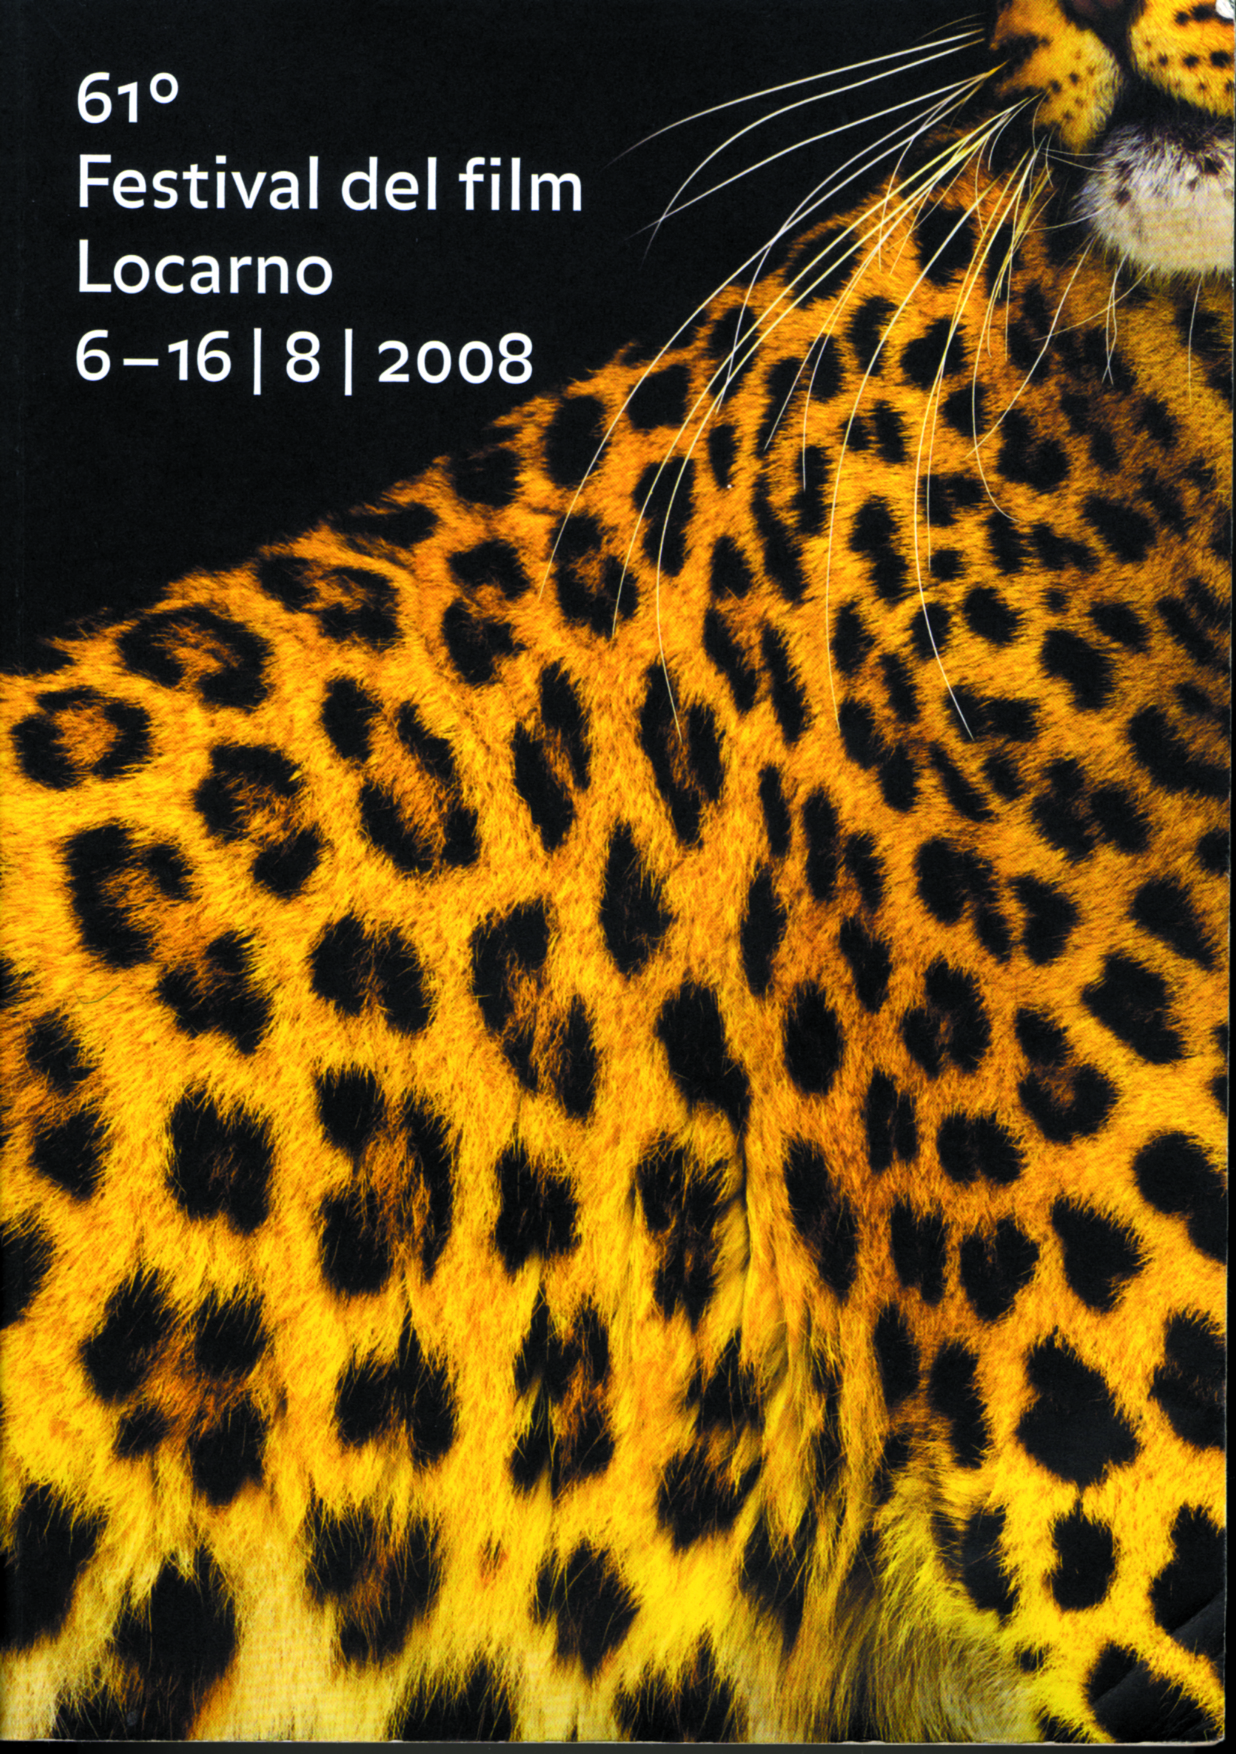 Copertina del catalogo dell'edizione 2008